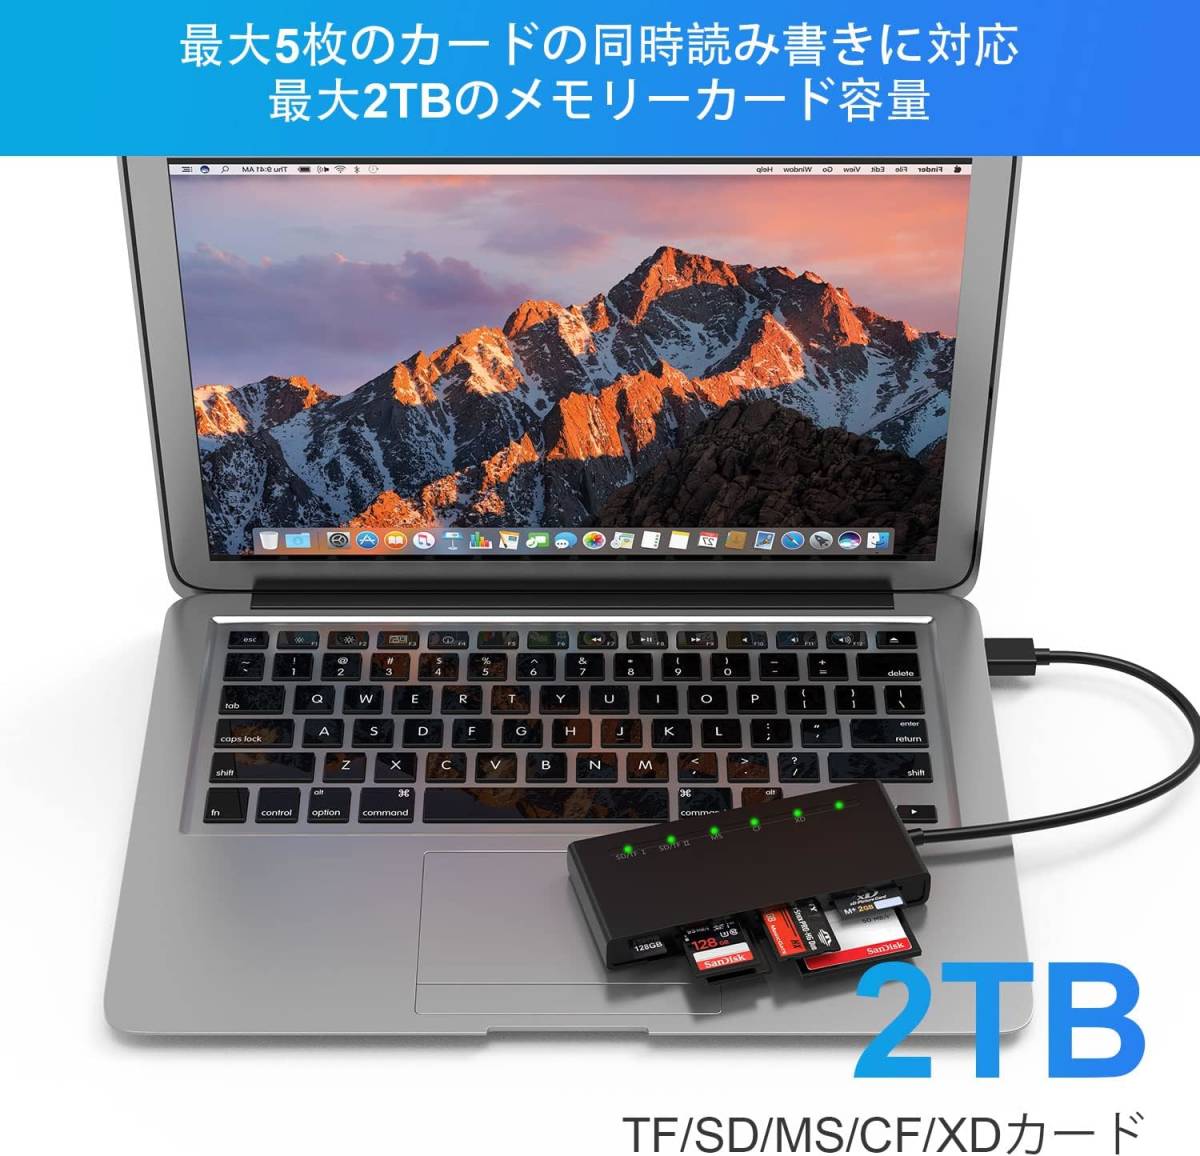 SDカードリーダー、7 in 1 USB3.0 カードリーダー SD/Micro SD/CF/XD/MS/MMCカメラメモリカード用_画像7